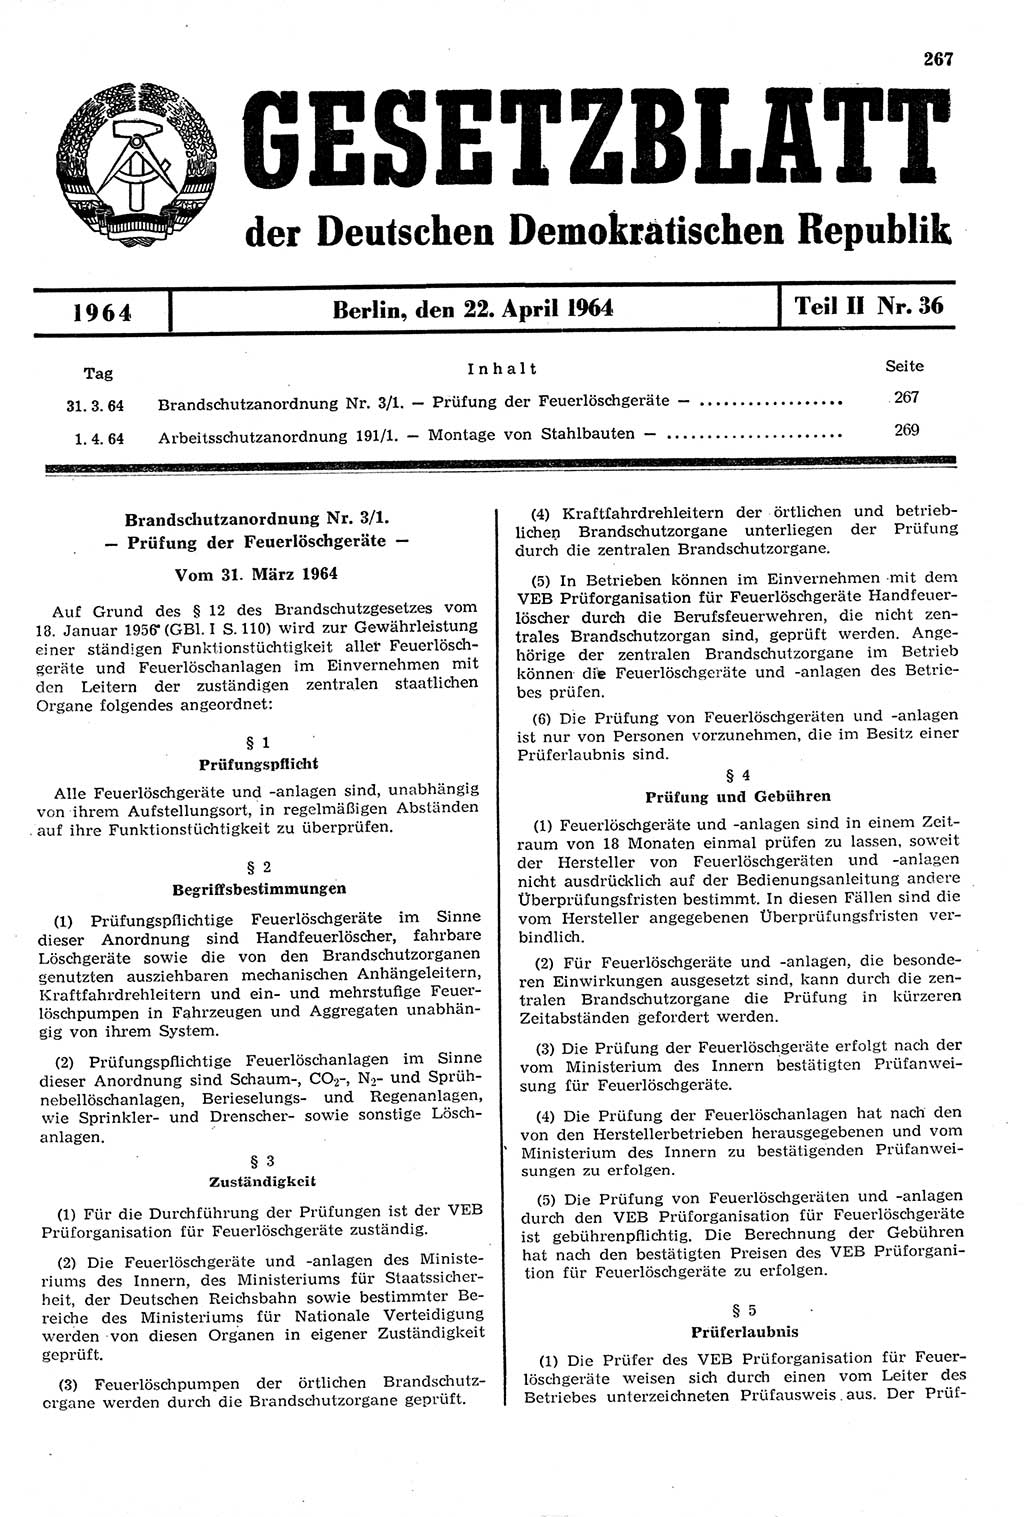 Gesetzblatt (GBl.) der Deutschen Demokratischen Republik (DDR) Teil ⅠⅠ 1964, Seite 267 (GBl. DDR ⅠⅠ 1964, S. 267)